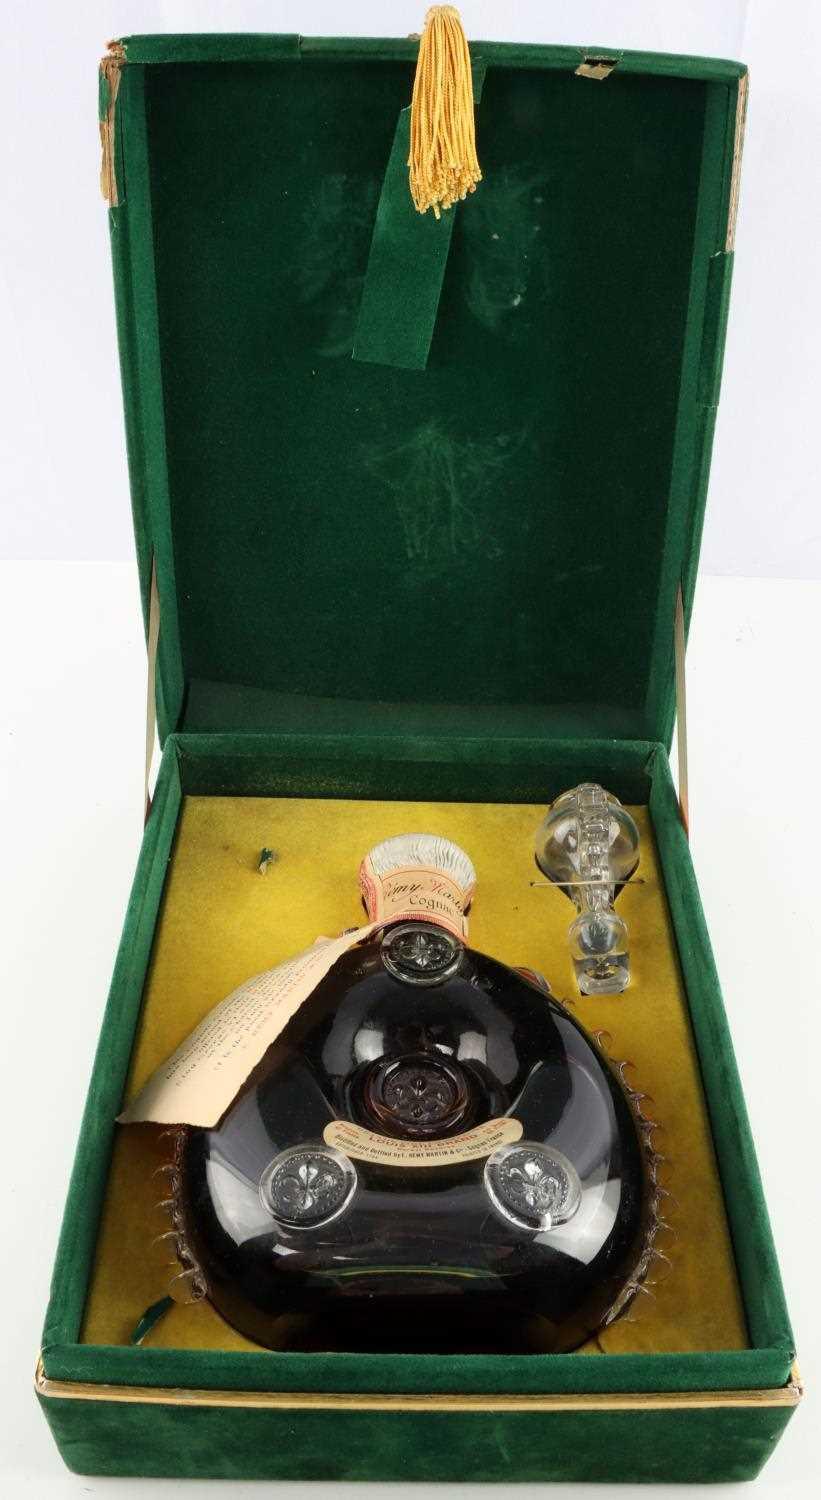 Sold at Auction: Louis XIII de Remy Martin Cognac